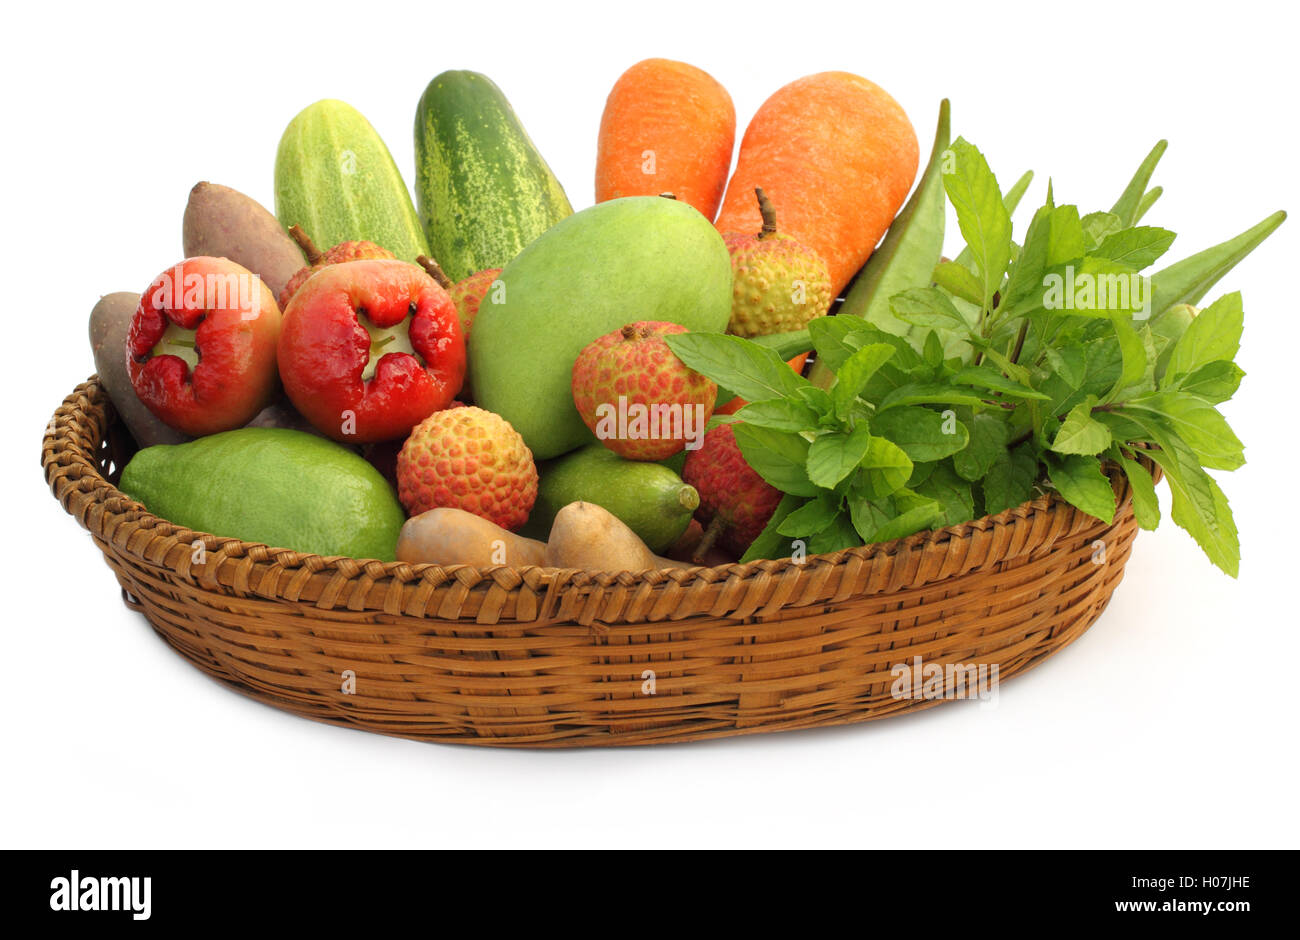 Les fruits et légumes tropicaux Banque D'Images